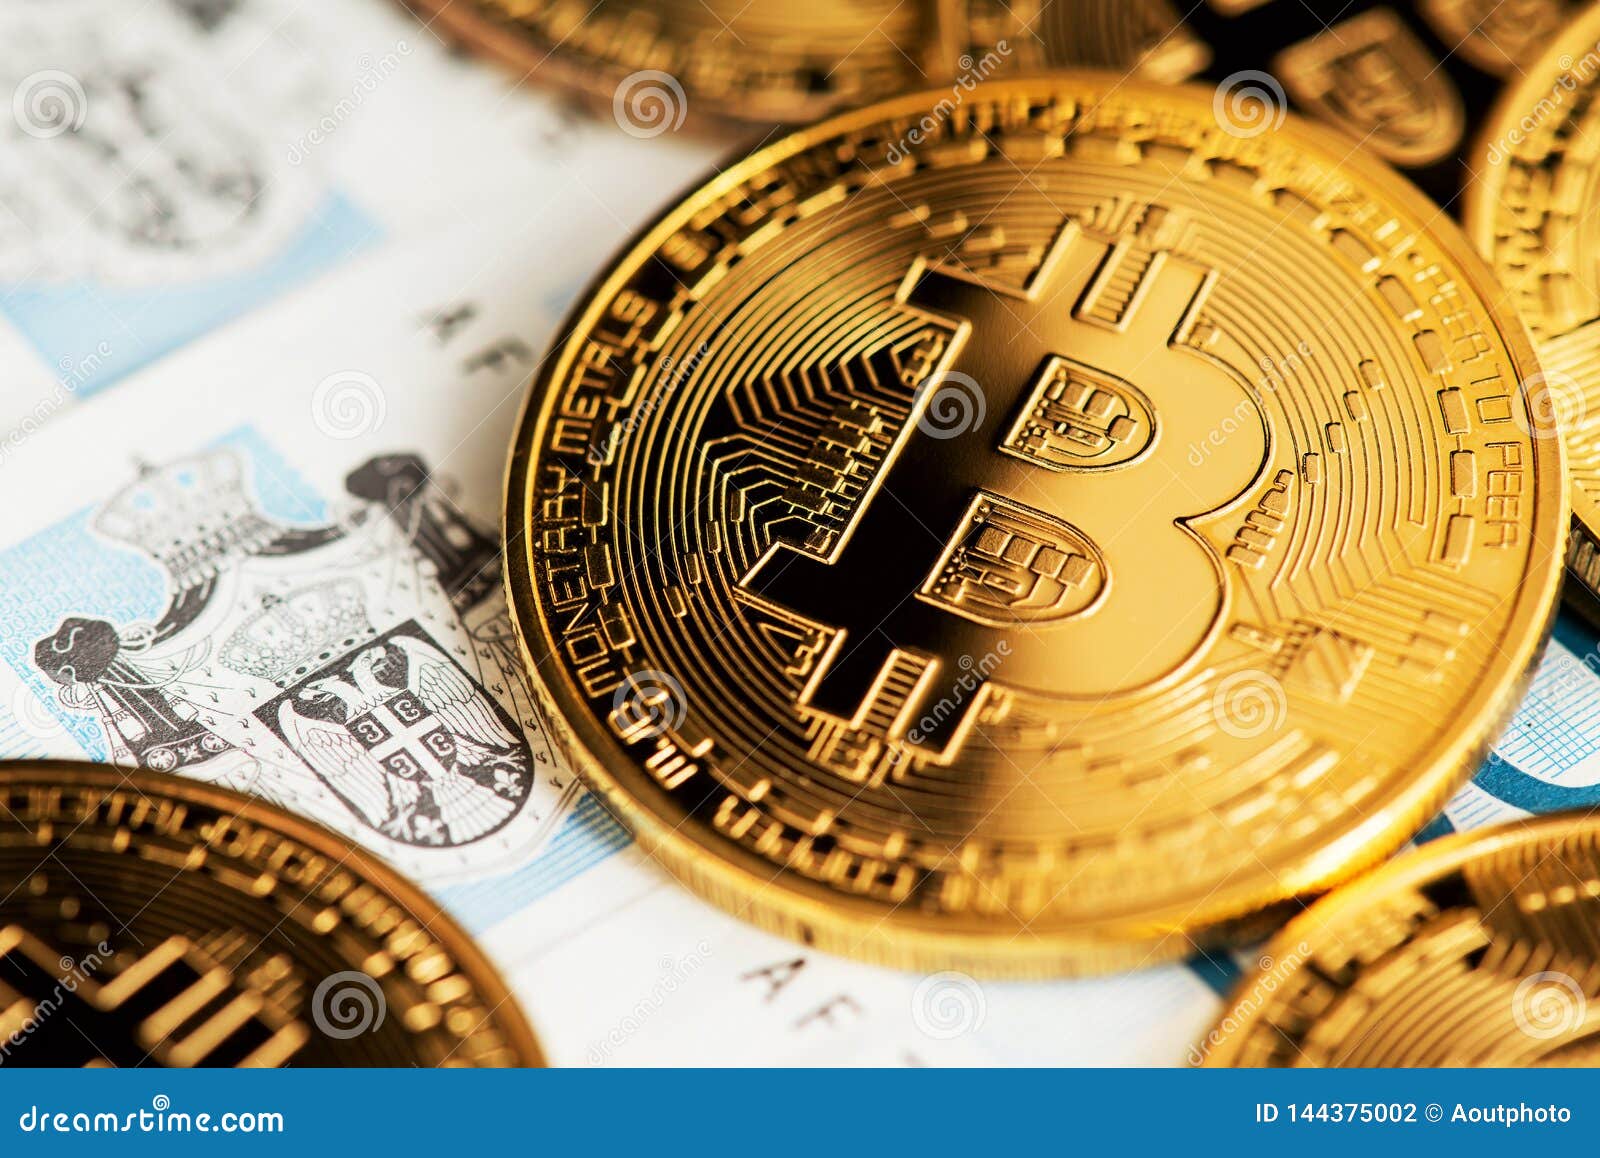 bitcoin la kuwaiti dinar)